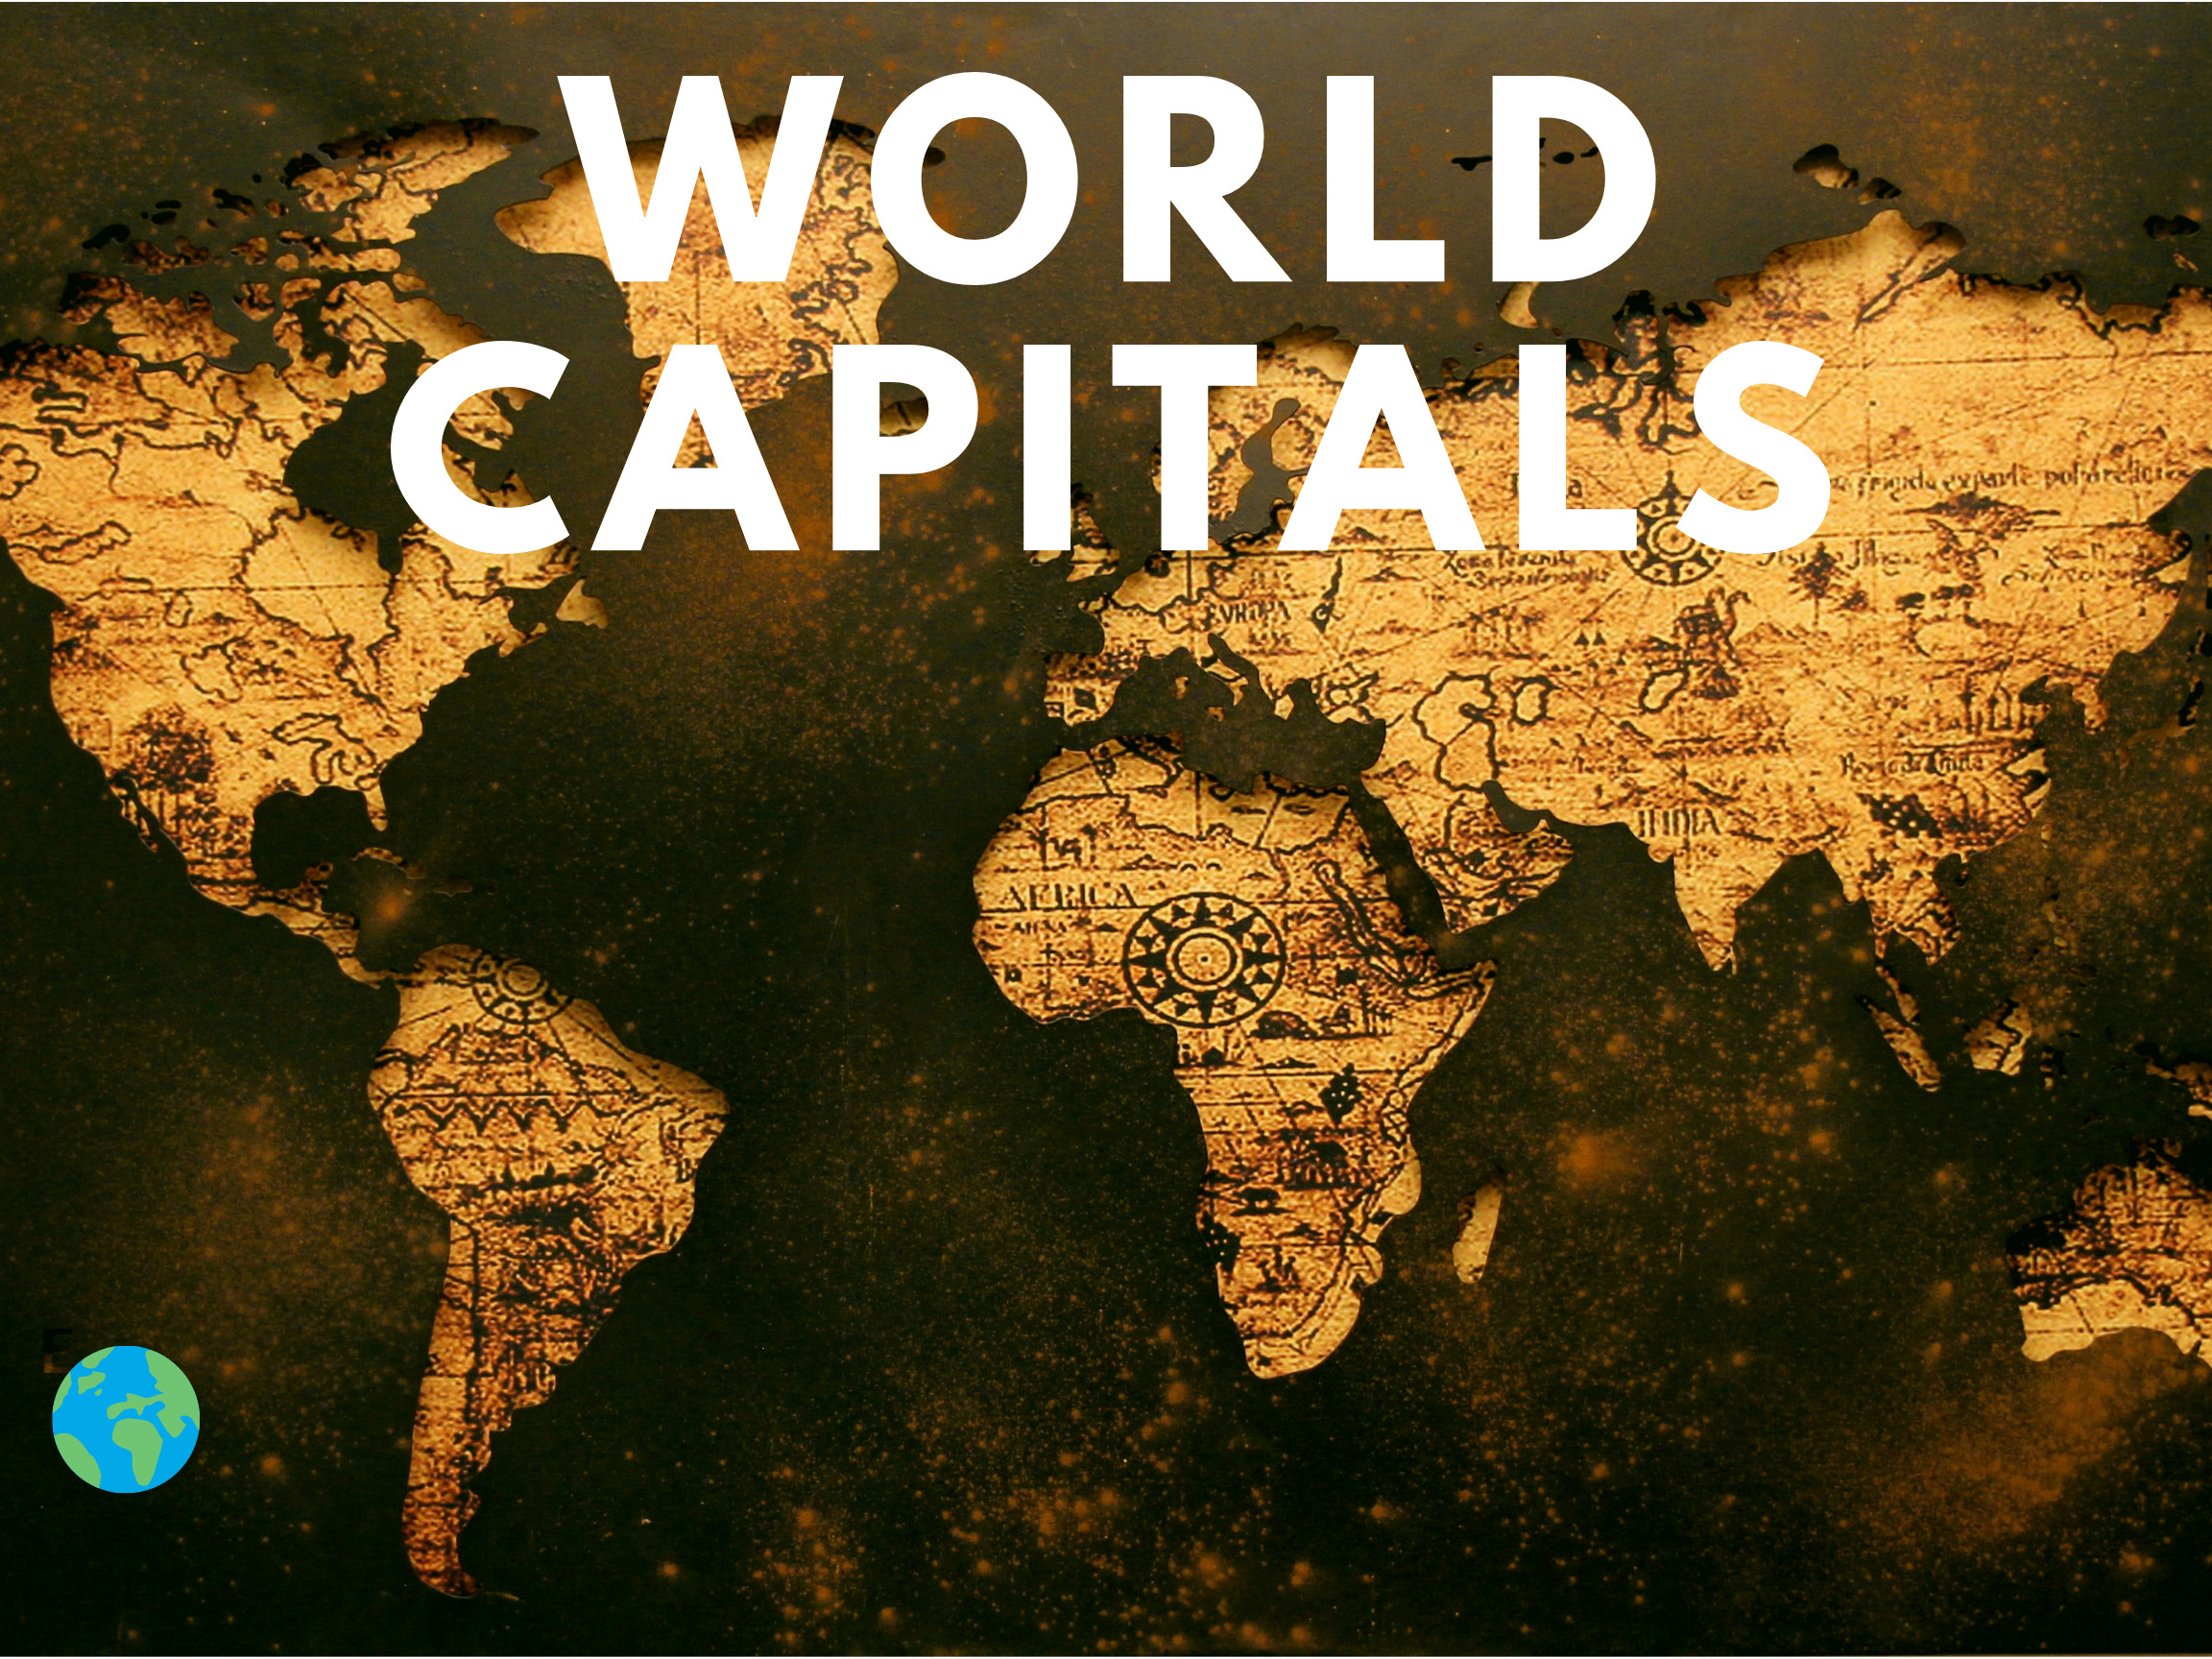 World Capitals